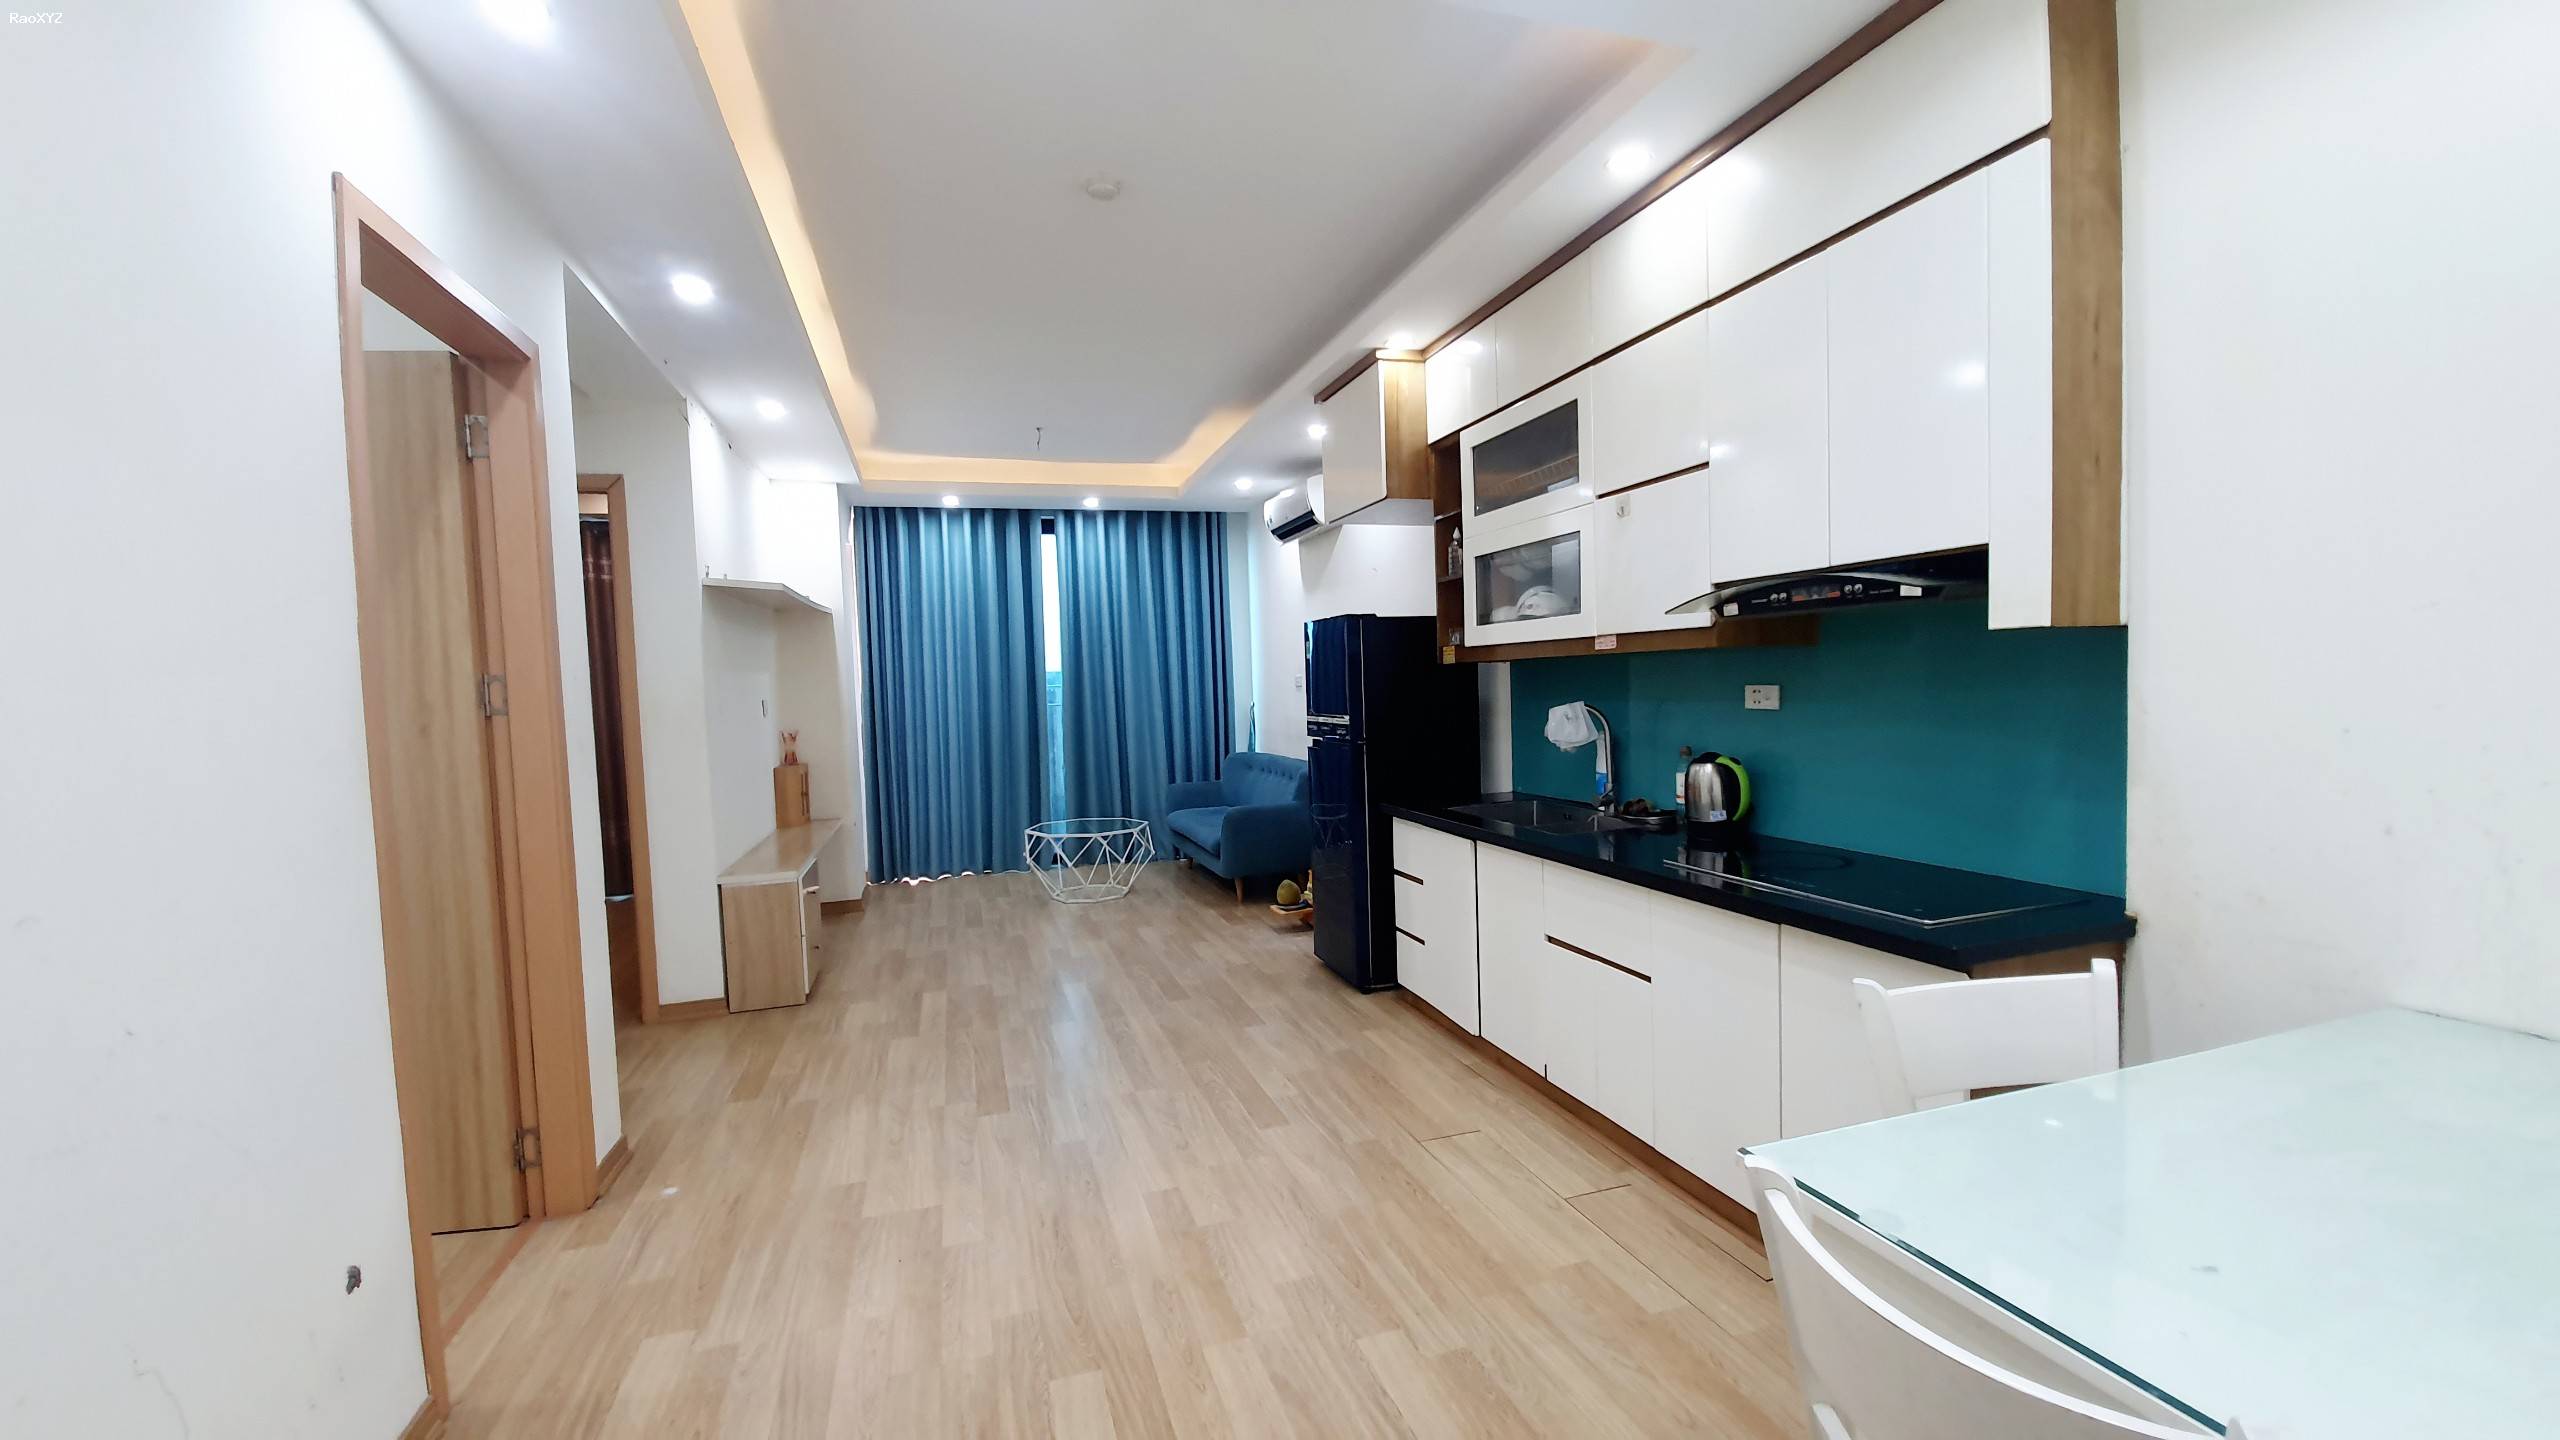 Cần bán căn hộ 2 PN full nội thất, view Hồ giá 910tr tại KĐT Thanh Hà Cienco 5